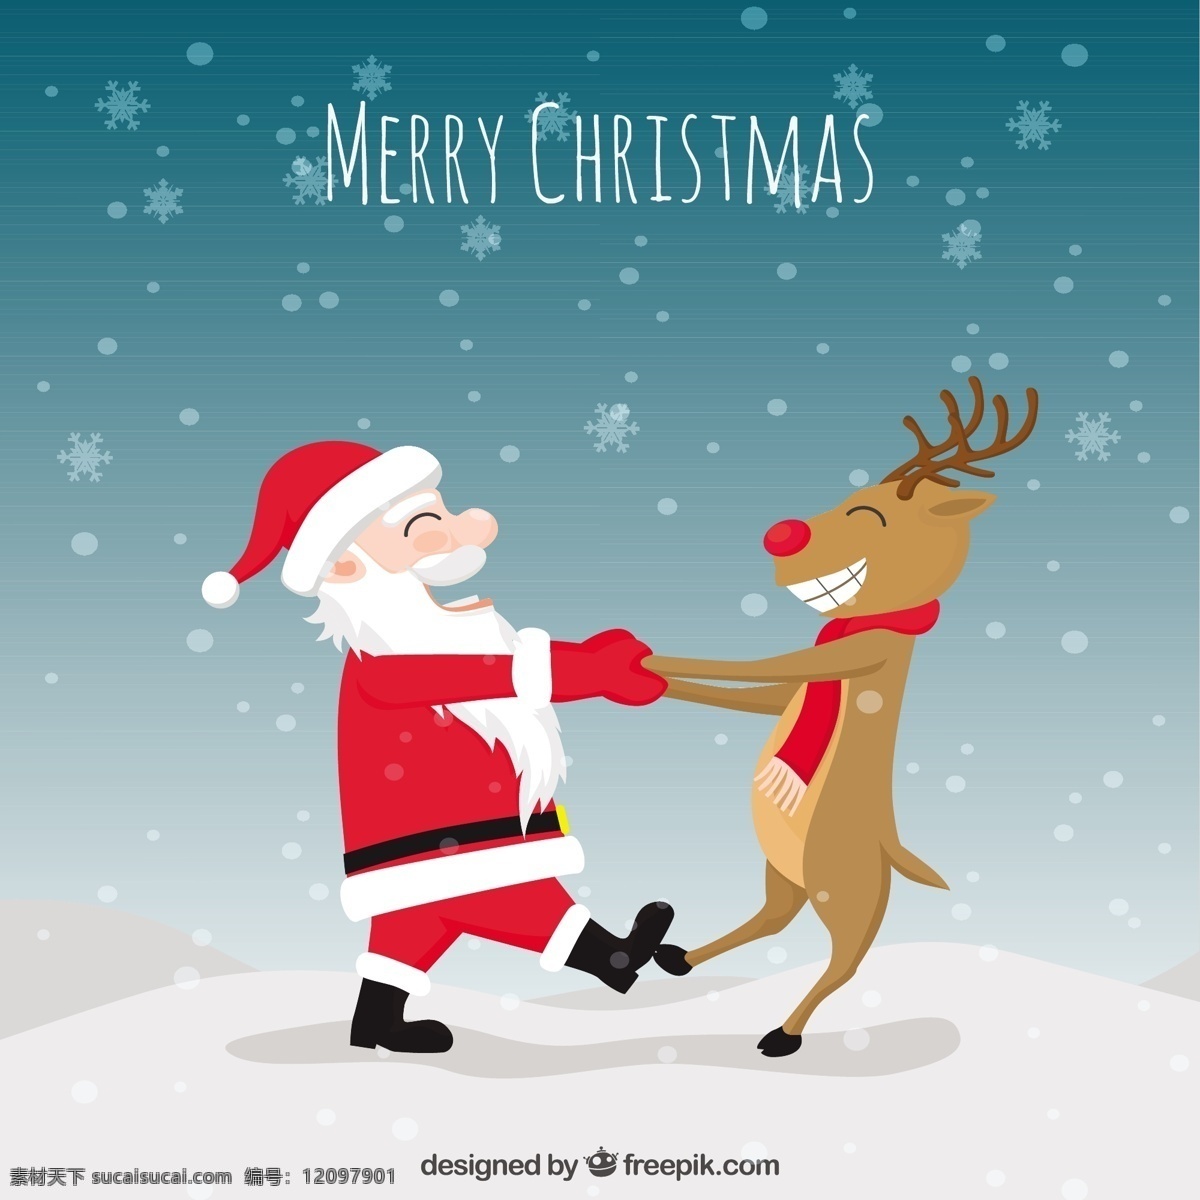 有趣 圣诞 插画 圣诞节 雪 舞蹈 圣诞快乐 冬天快乐 圣诞老人 克劳斯 节日 庆典 驯鹿 好玩 快乐的假期 插图 跳舞 季节 快乐 白色